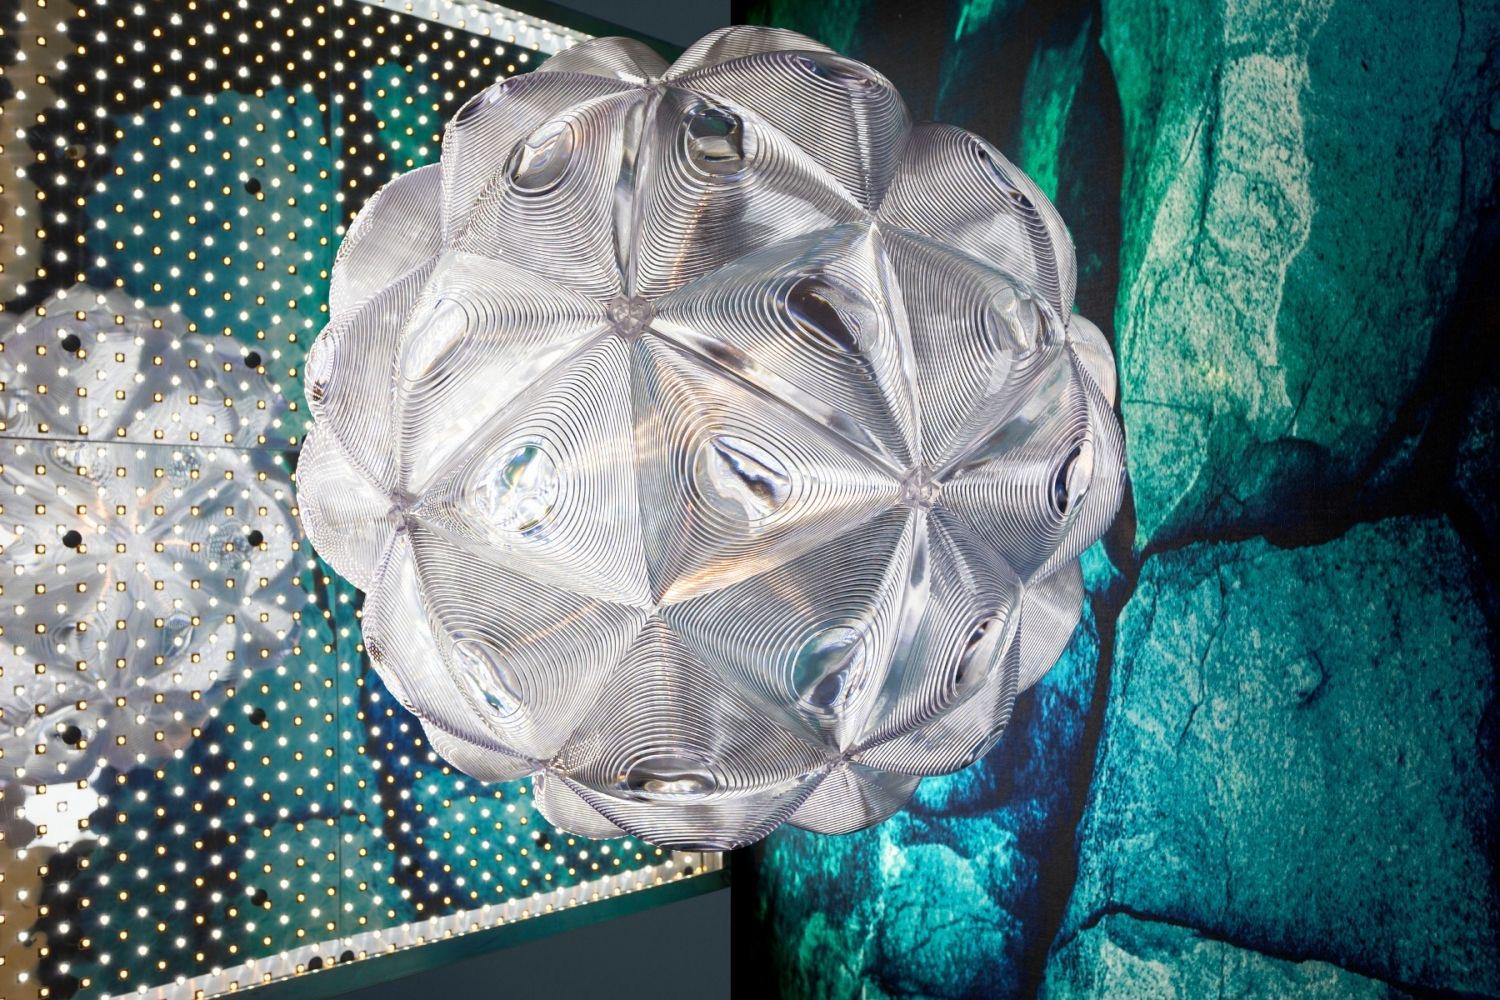 Modern Tom Dixon Lens Pendant Fixture, Spherical Ceiling Light, Globe Chandelier, 2019